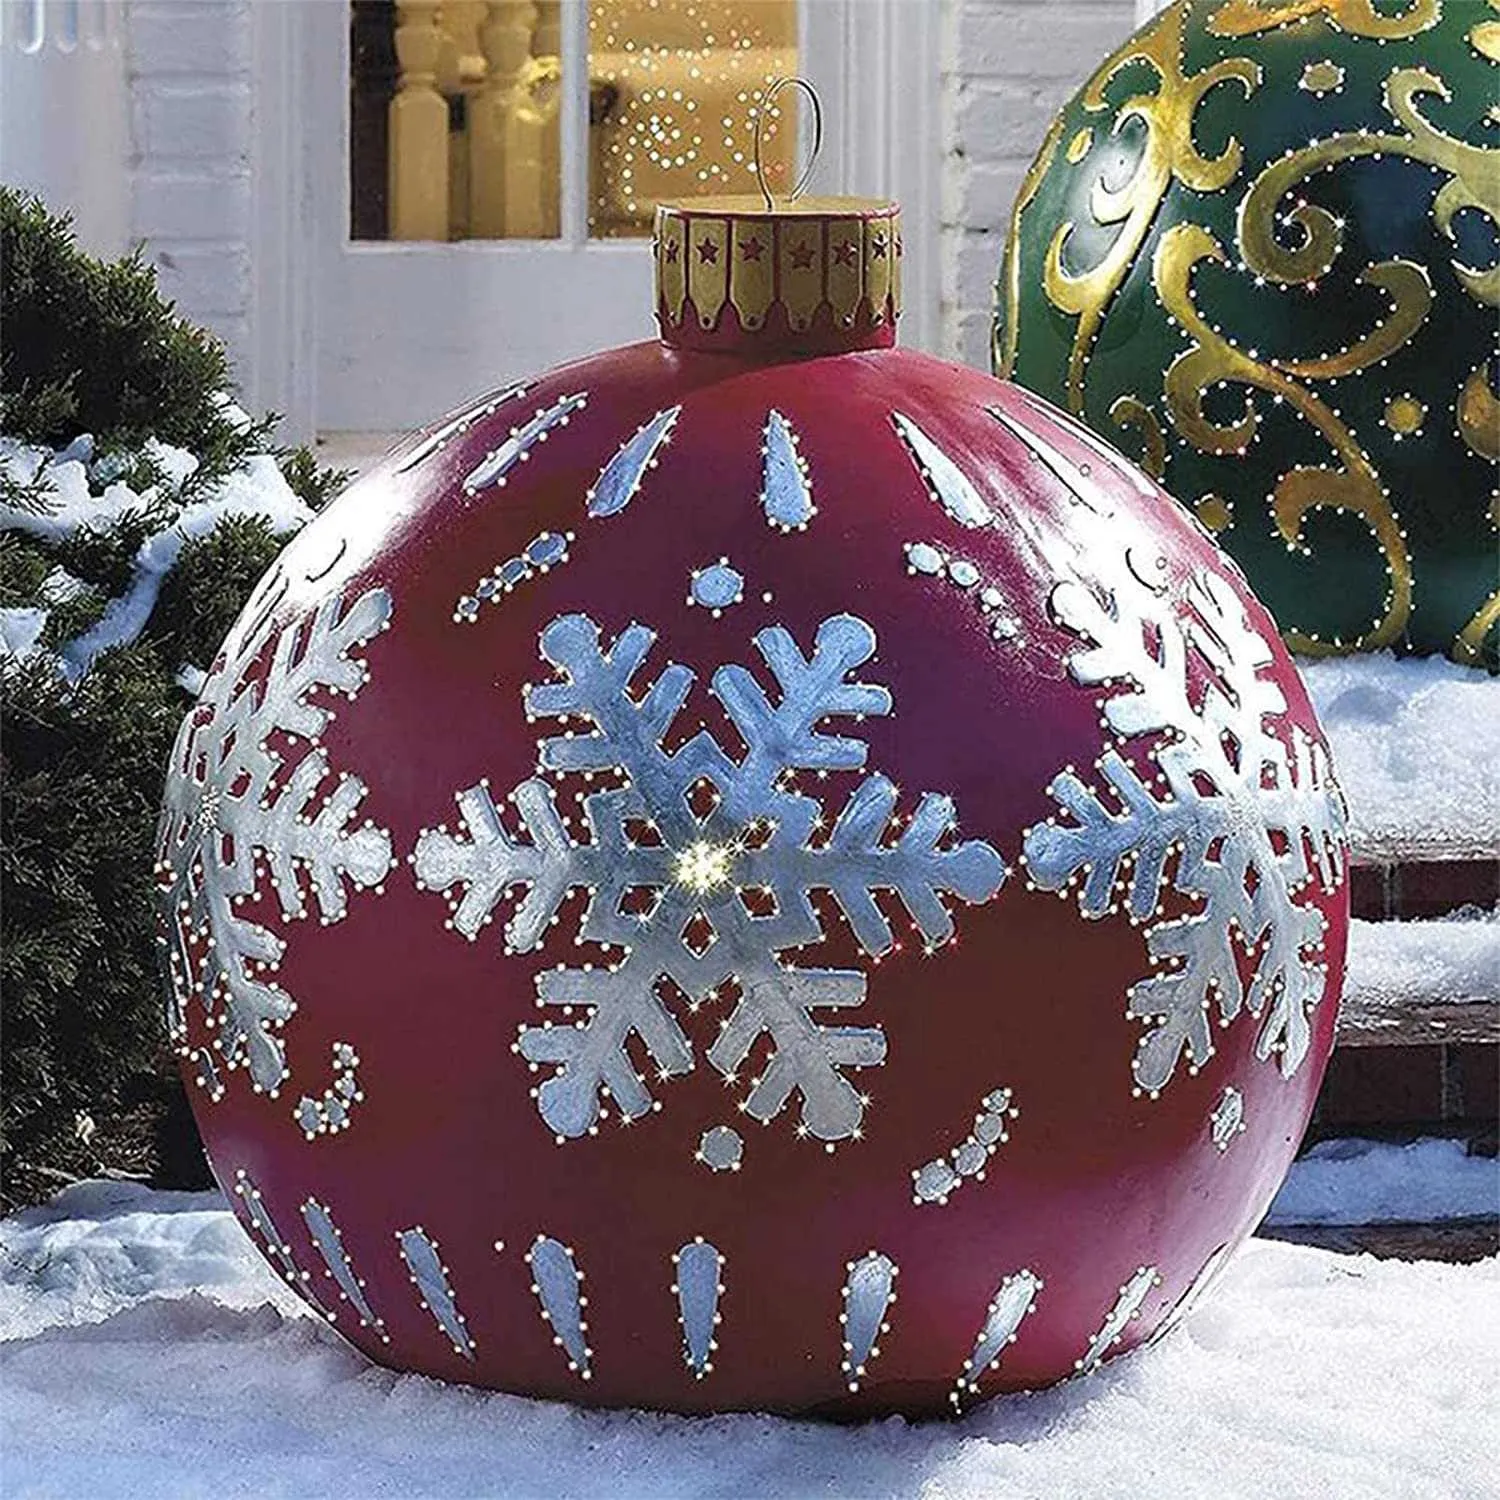 Palla decorata natalizia gonfiabile all'aperto realizzata in PVC 23 6 pollici Decorazioni alberi giganti Decorazioni le vacanze 211019280P